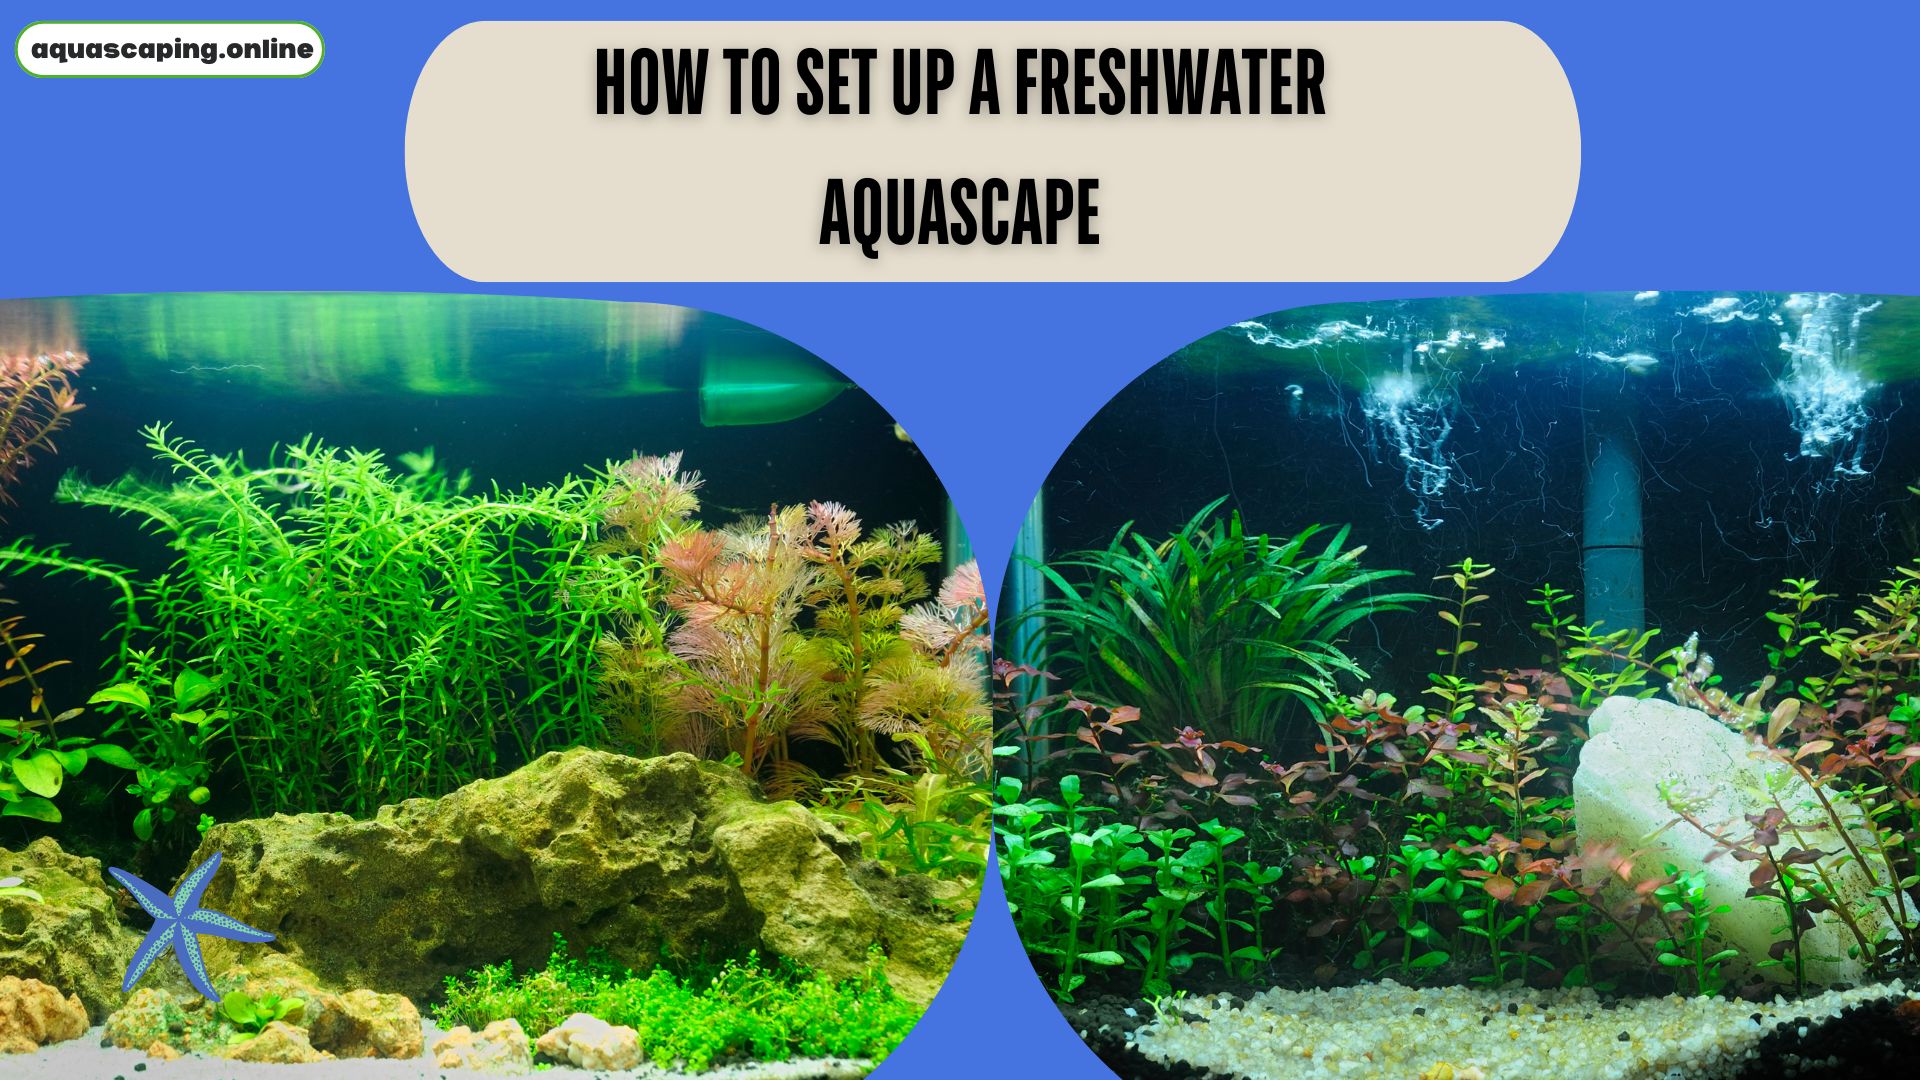 Set up a freshwater aquascape